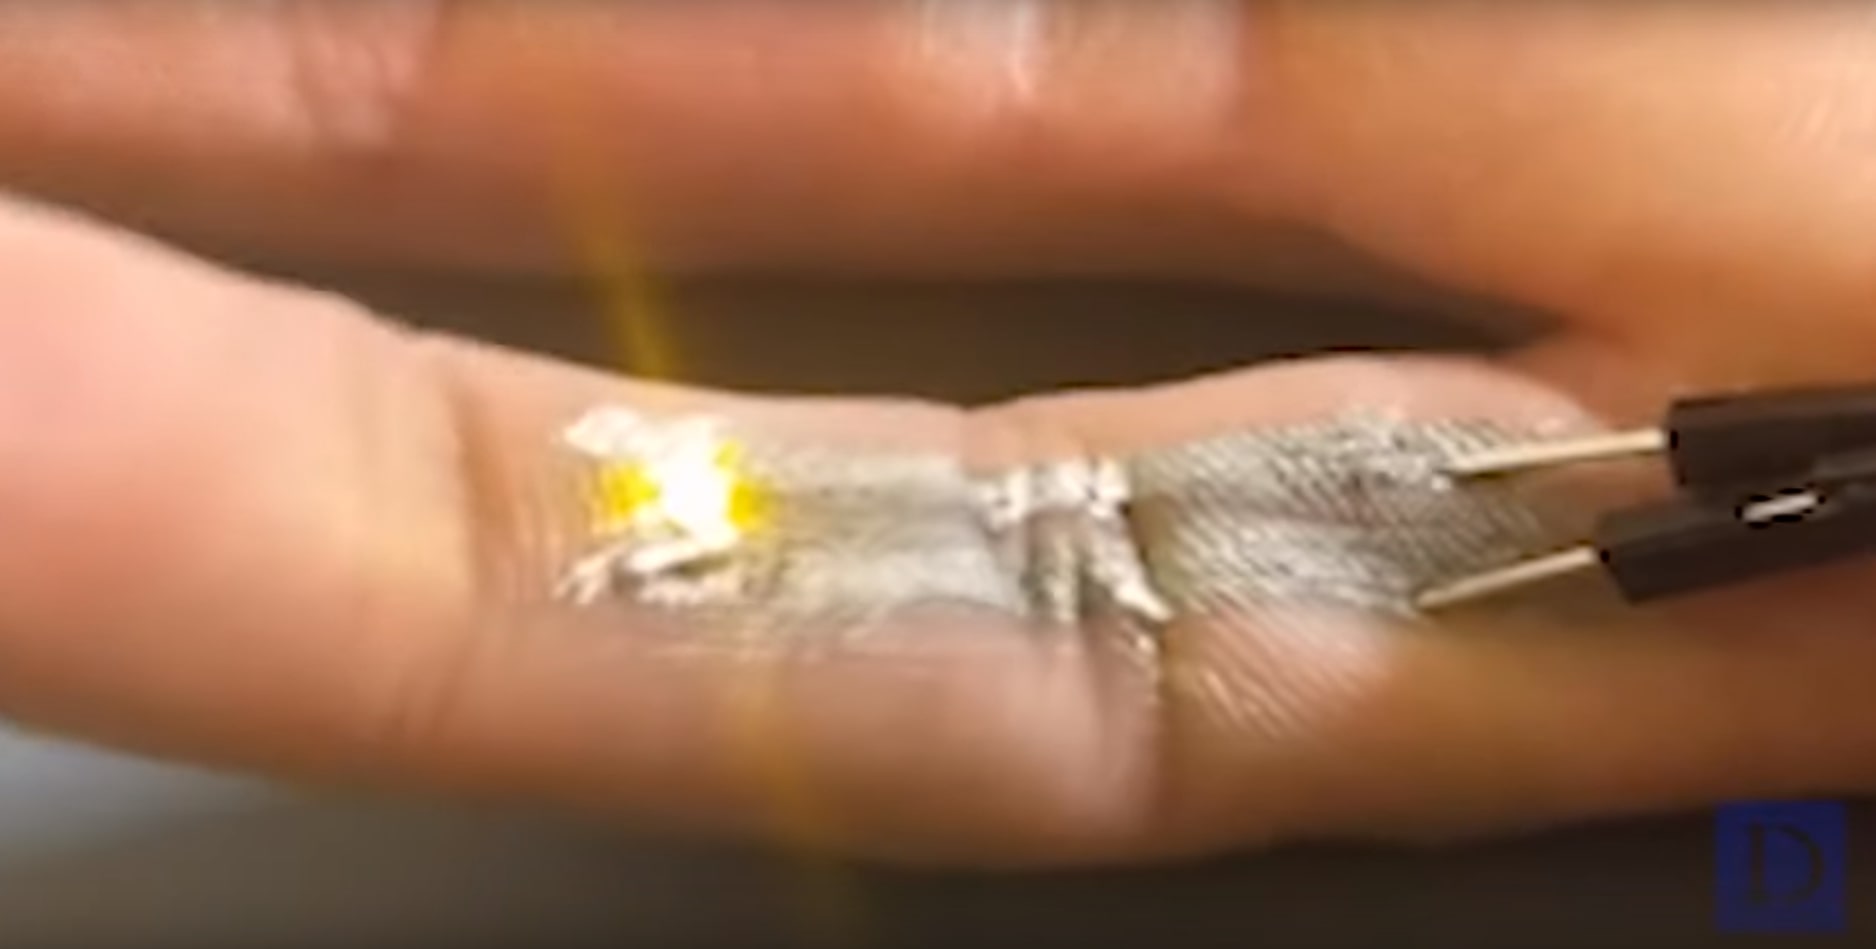 De l'encre conductrice imprimée sur un doigt allumant une petite LED